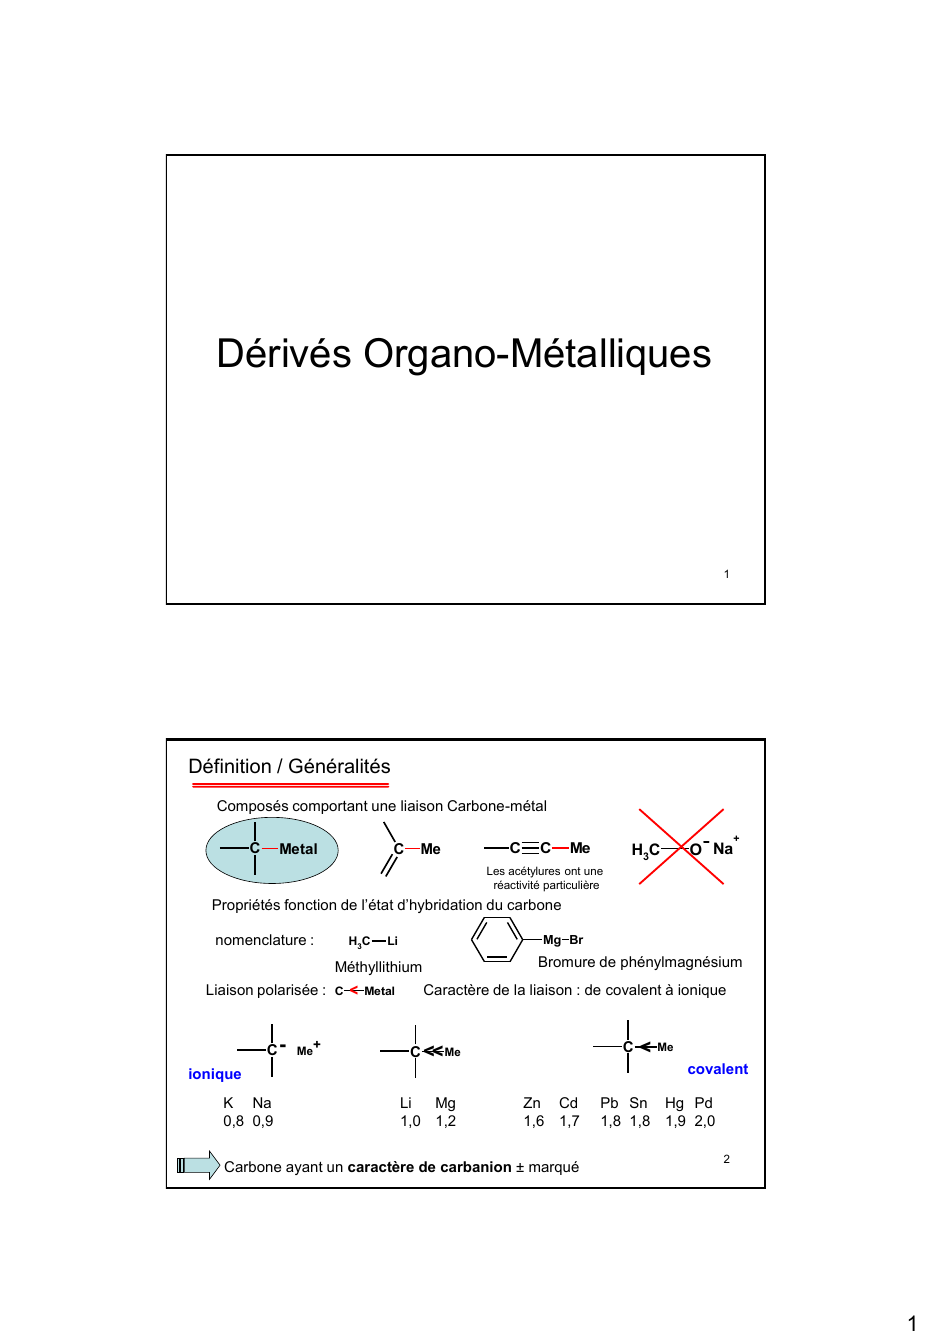 Prévisualisation du document Dérivés Organo-Métalliques

1

Définition / Généralités
Composés comportant une liaison Carbone-métal

C

Metal

C

Me

C

C

Me

H3C

O...